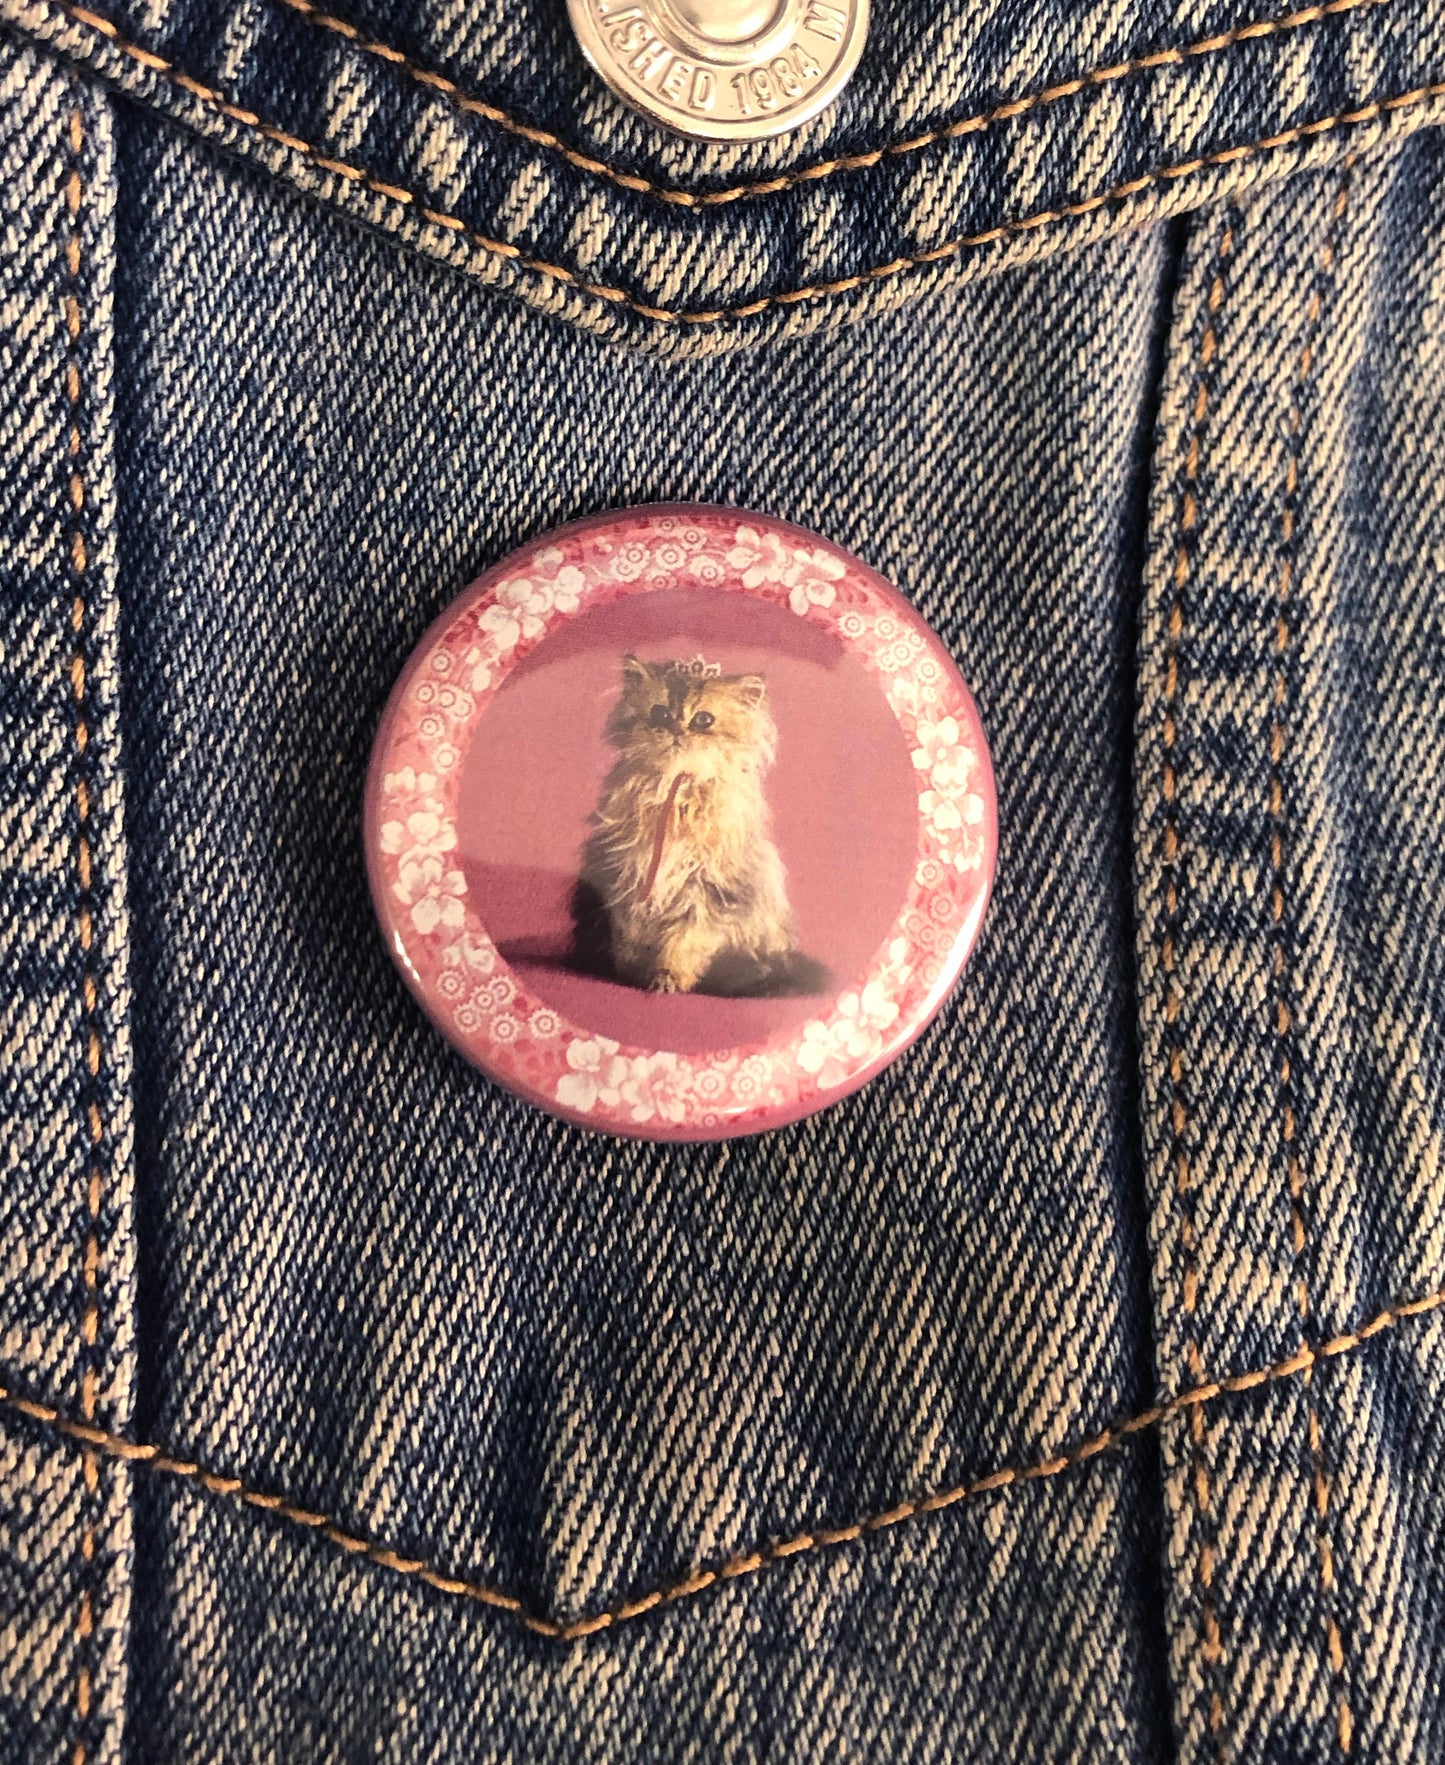 Umbridge cat badge collection